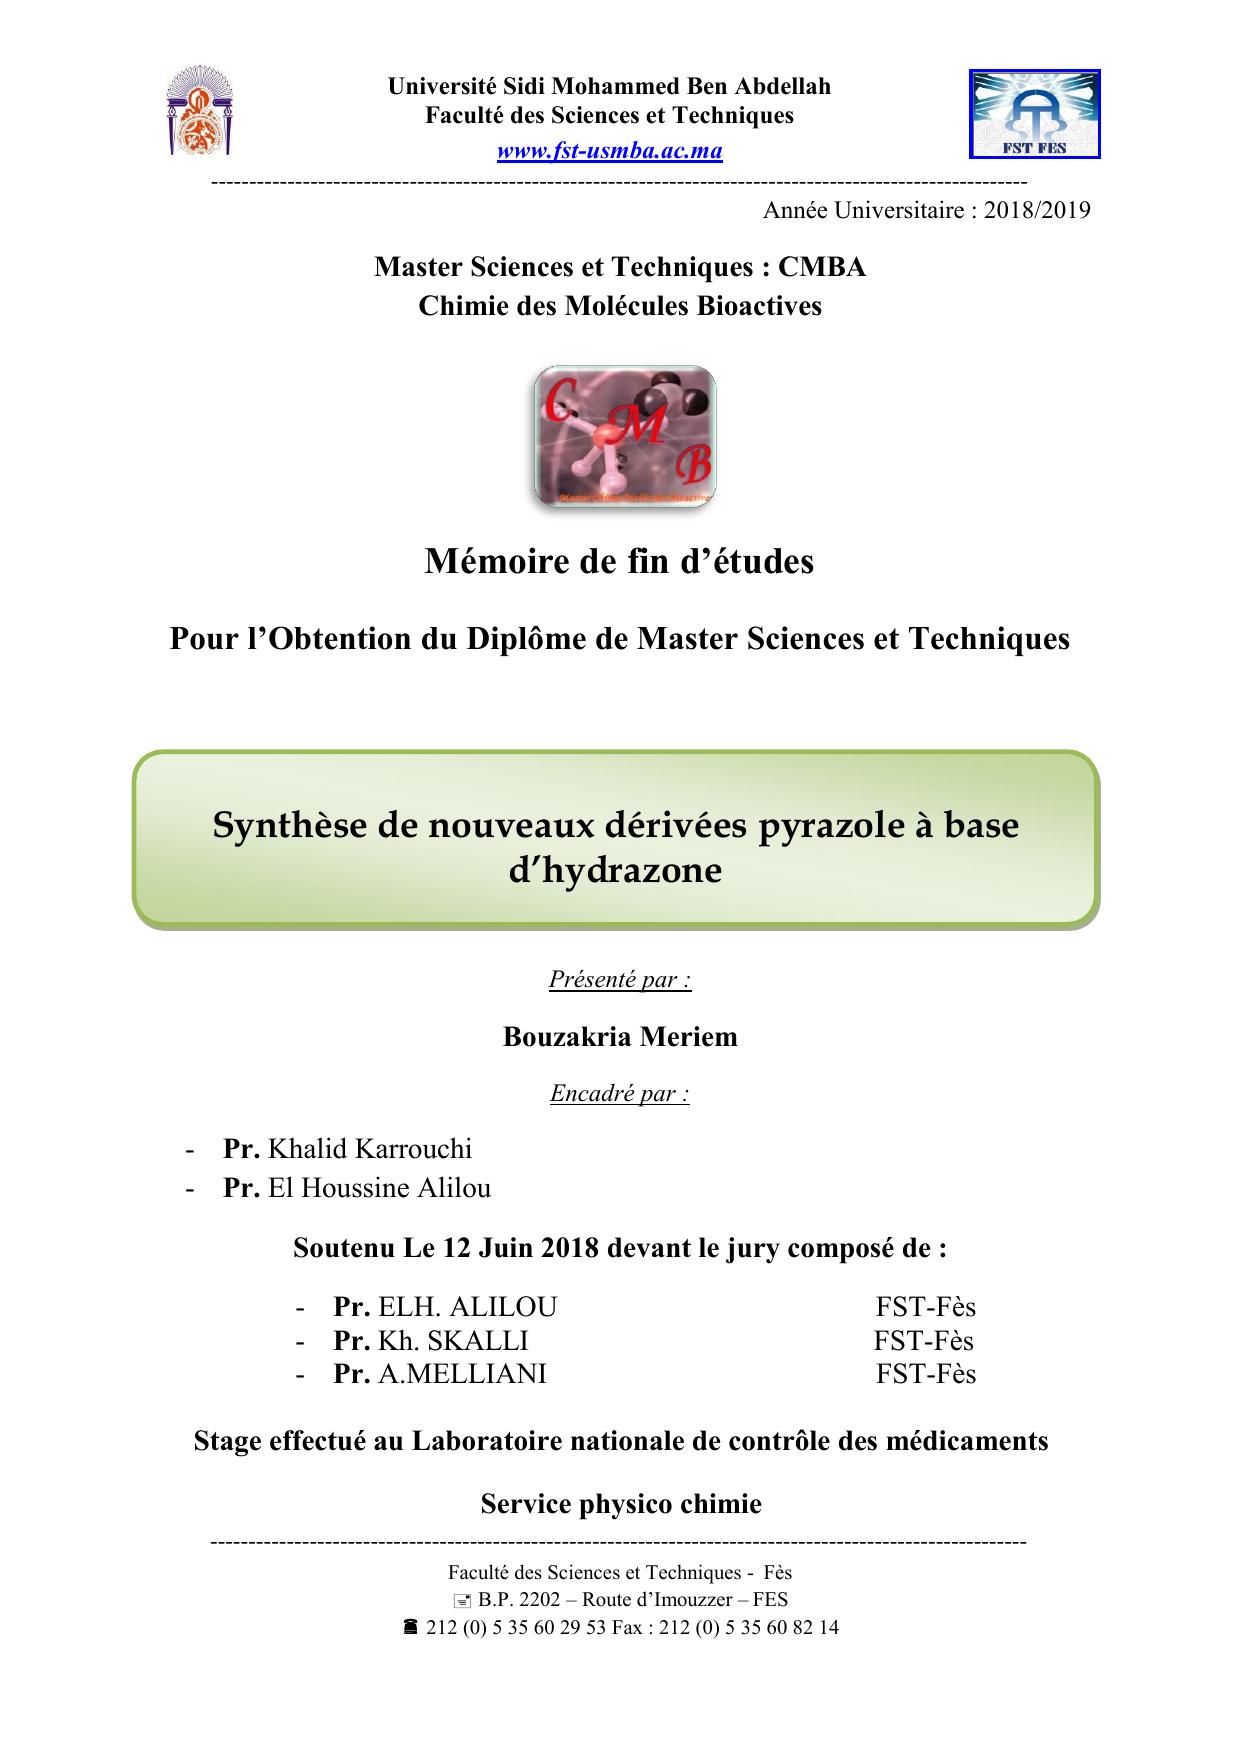 Synthèse de nouveaux dérivées pyrazole à base d’hydrazone